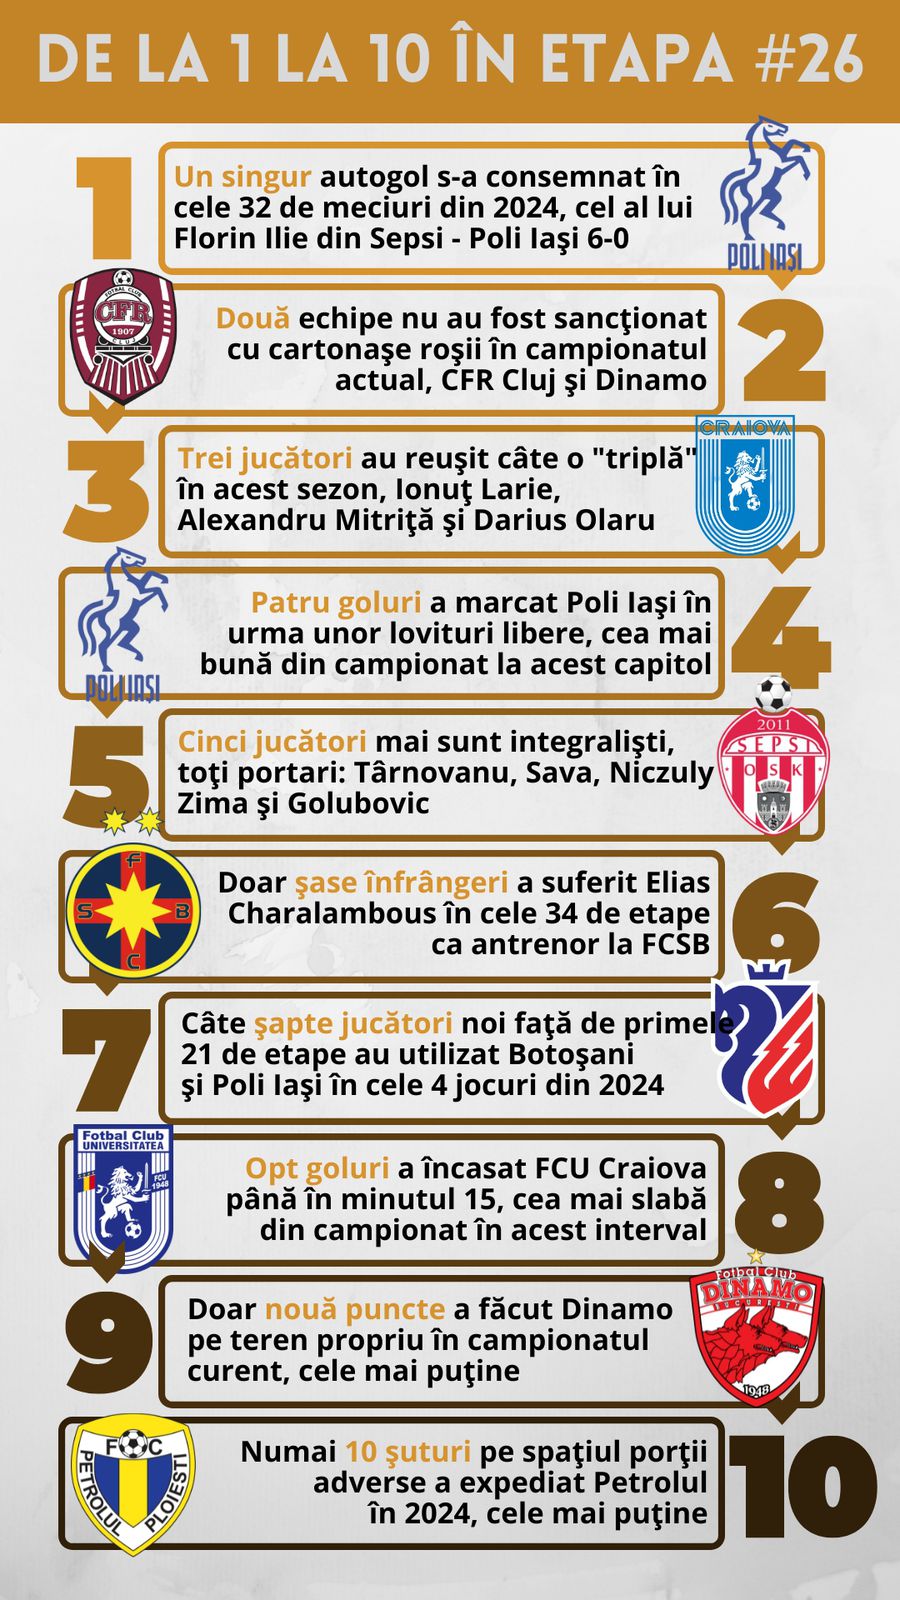 10 lucruri pe care să le urmărim în etapa #26 din Superliga » Recordul lui Bergodi, 9 ani de ghinion pentru FCSB, probleme pentru Hagi